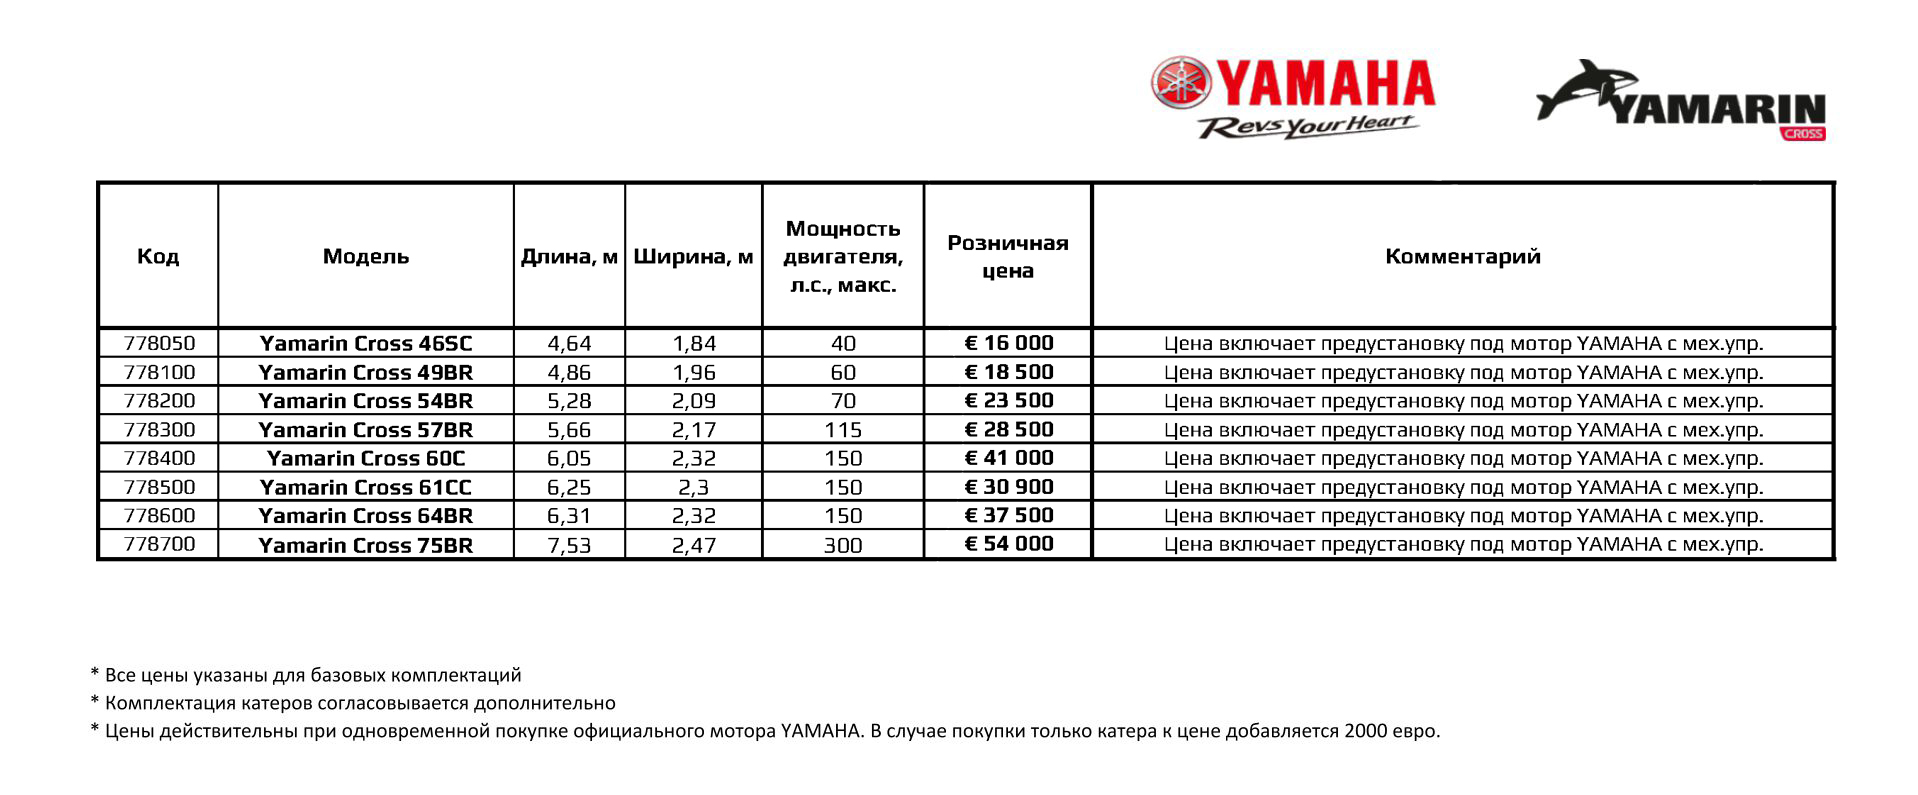 Yamarine price, лодки ямарин цена, ямарин цена, yamarin цена, ямарин кросс цена, yamarin cross цена